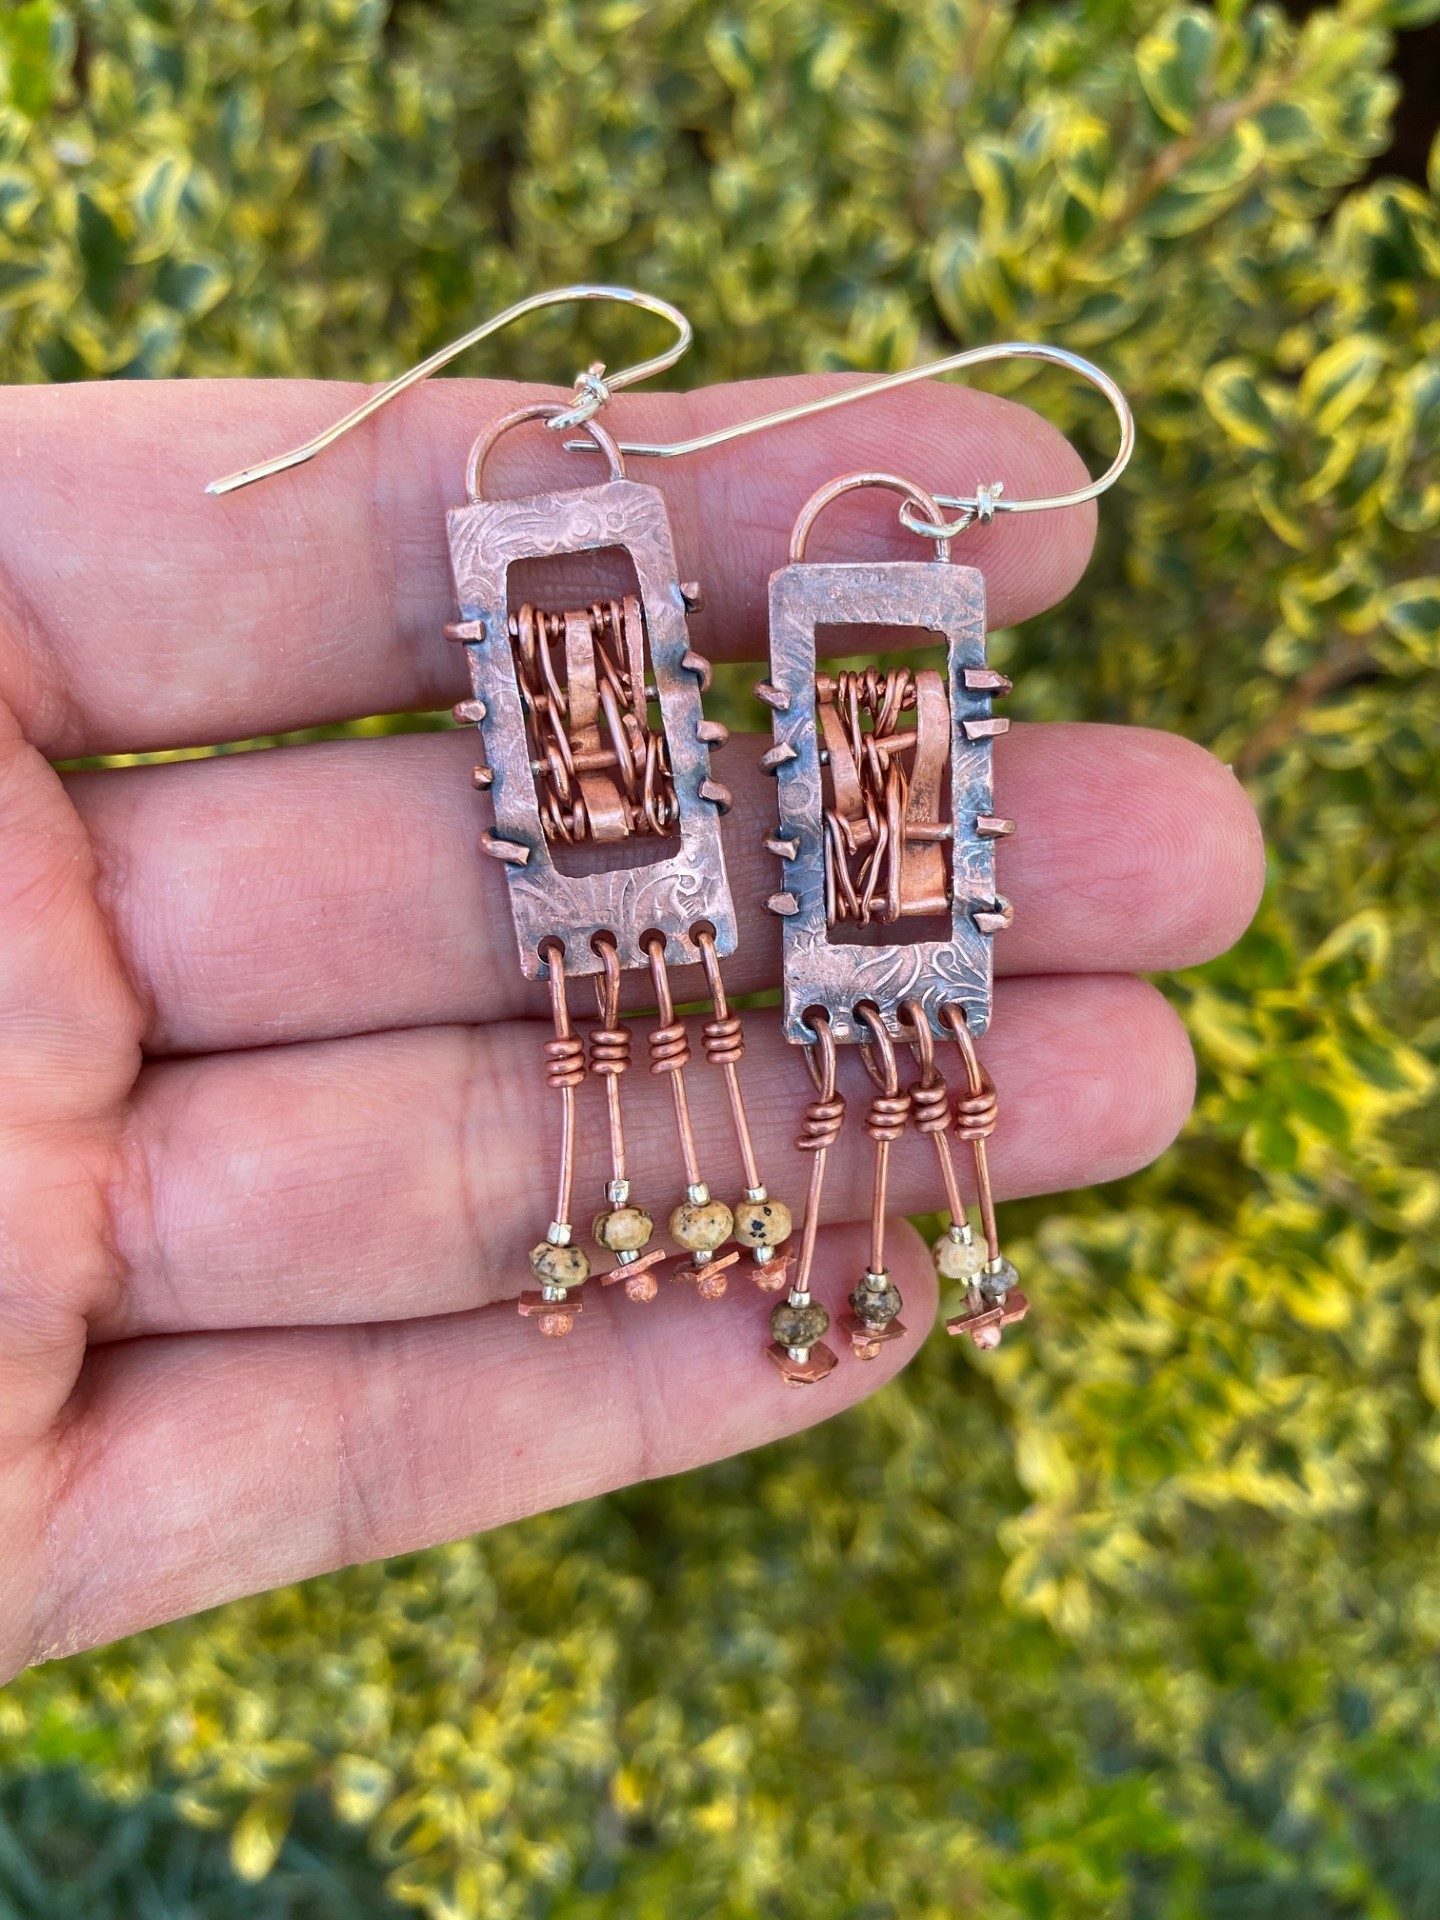 Woven copper earrings with jasper beads